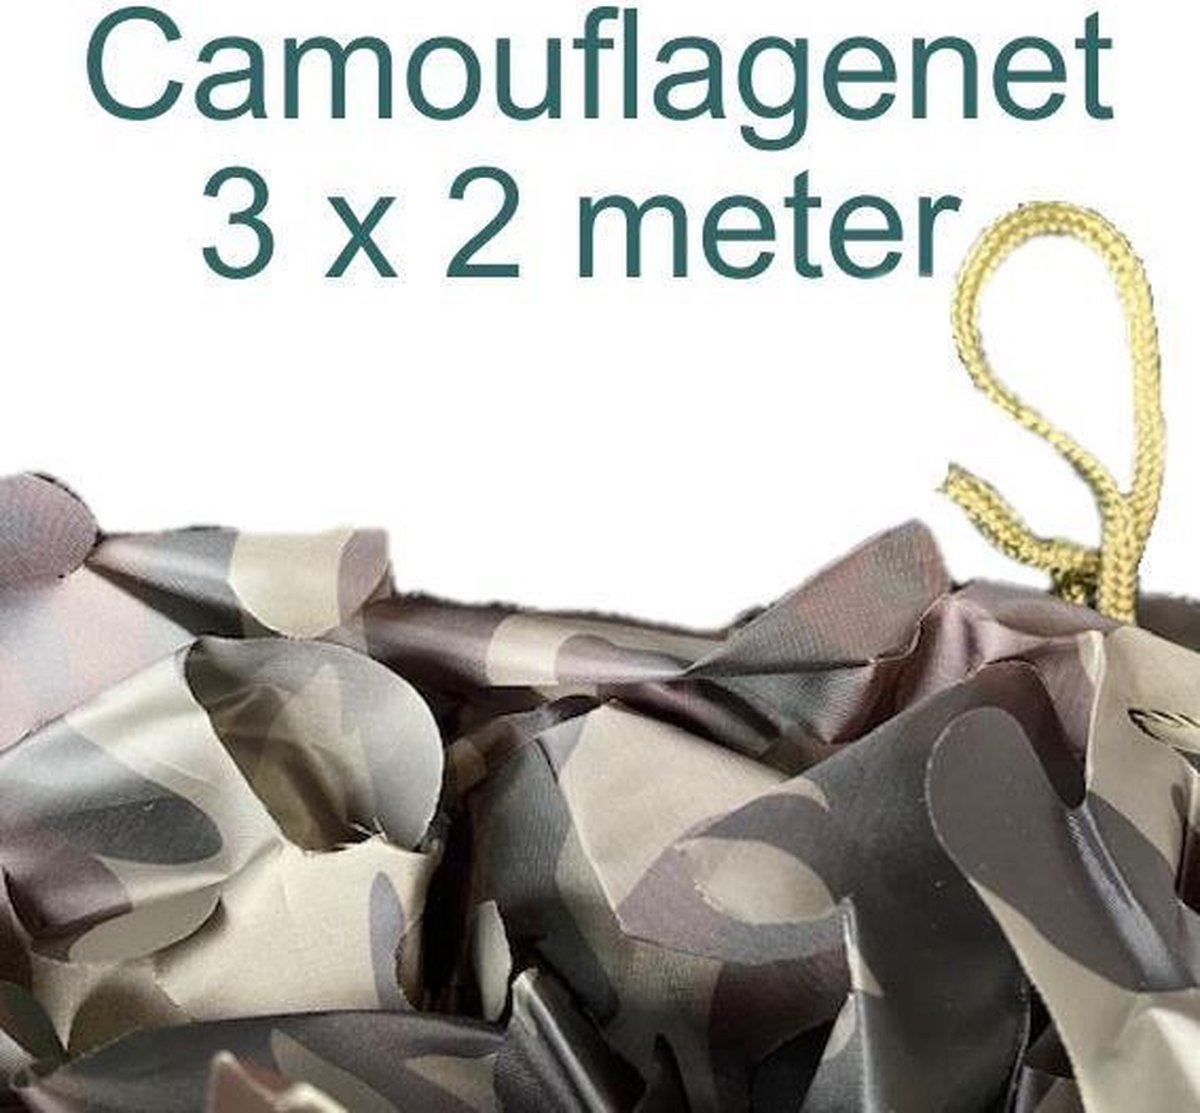 Camouflagenet 3 stuks x 2 meter Camo2  - 3 x 1,80x2meter - camouflagenetten van ProLoo- tuinnet - schaduwdoek - ProLoo